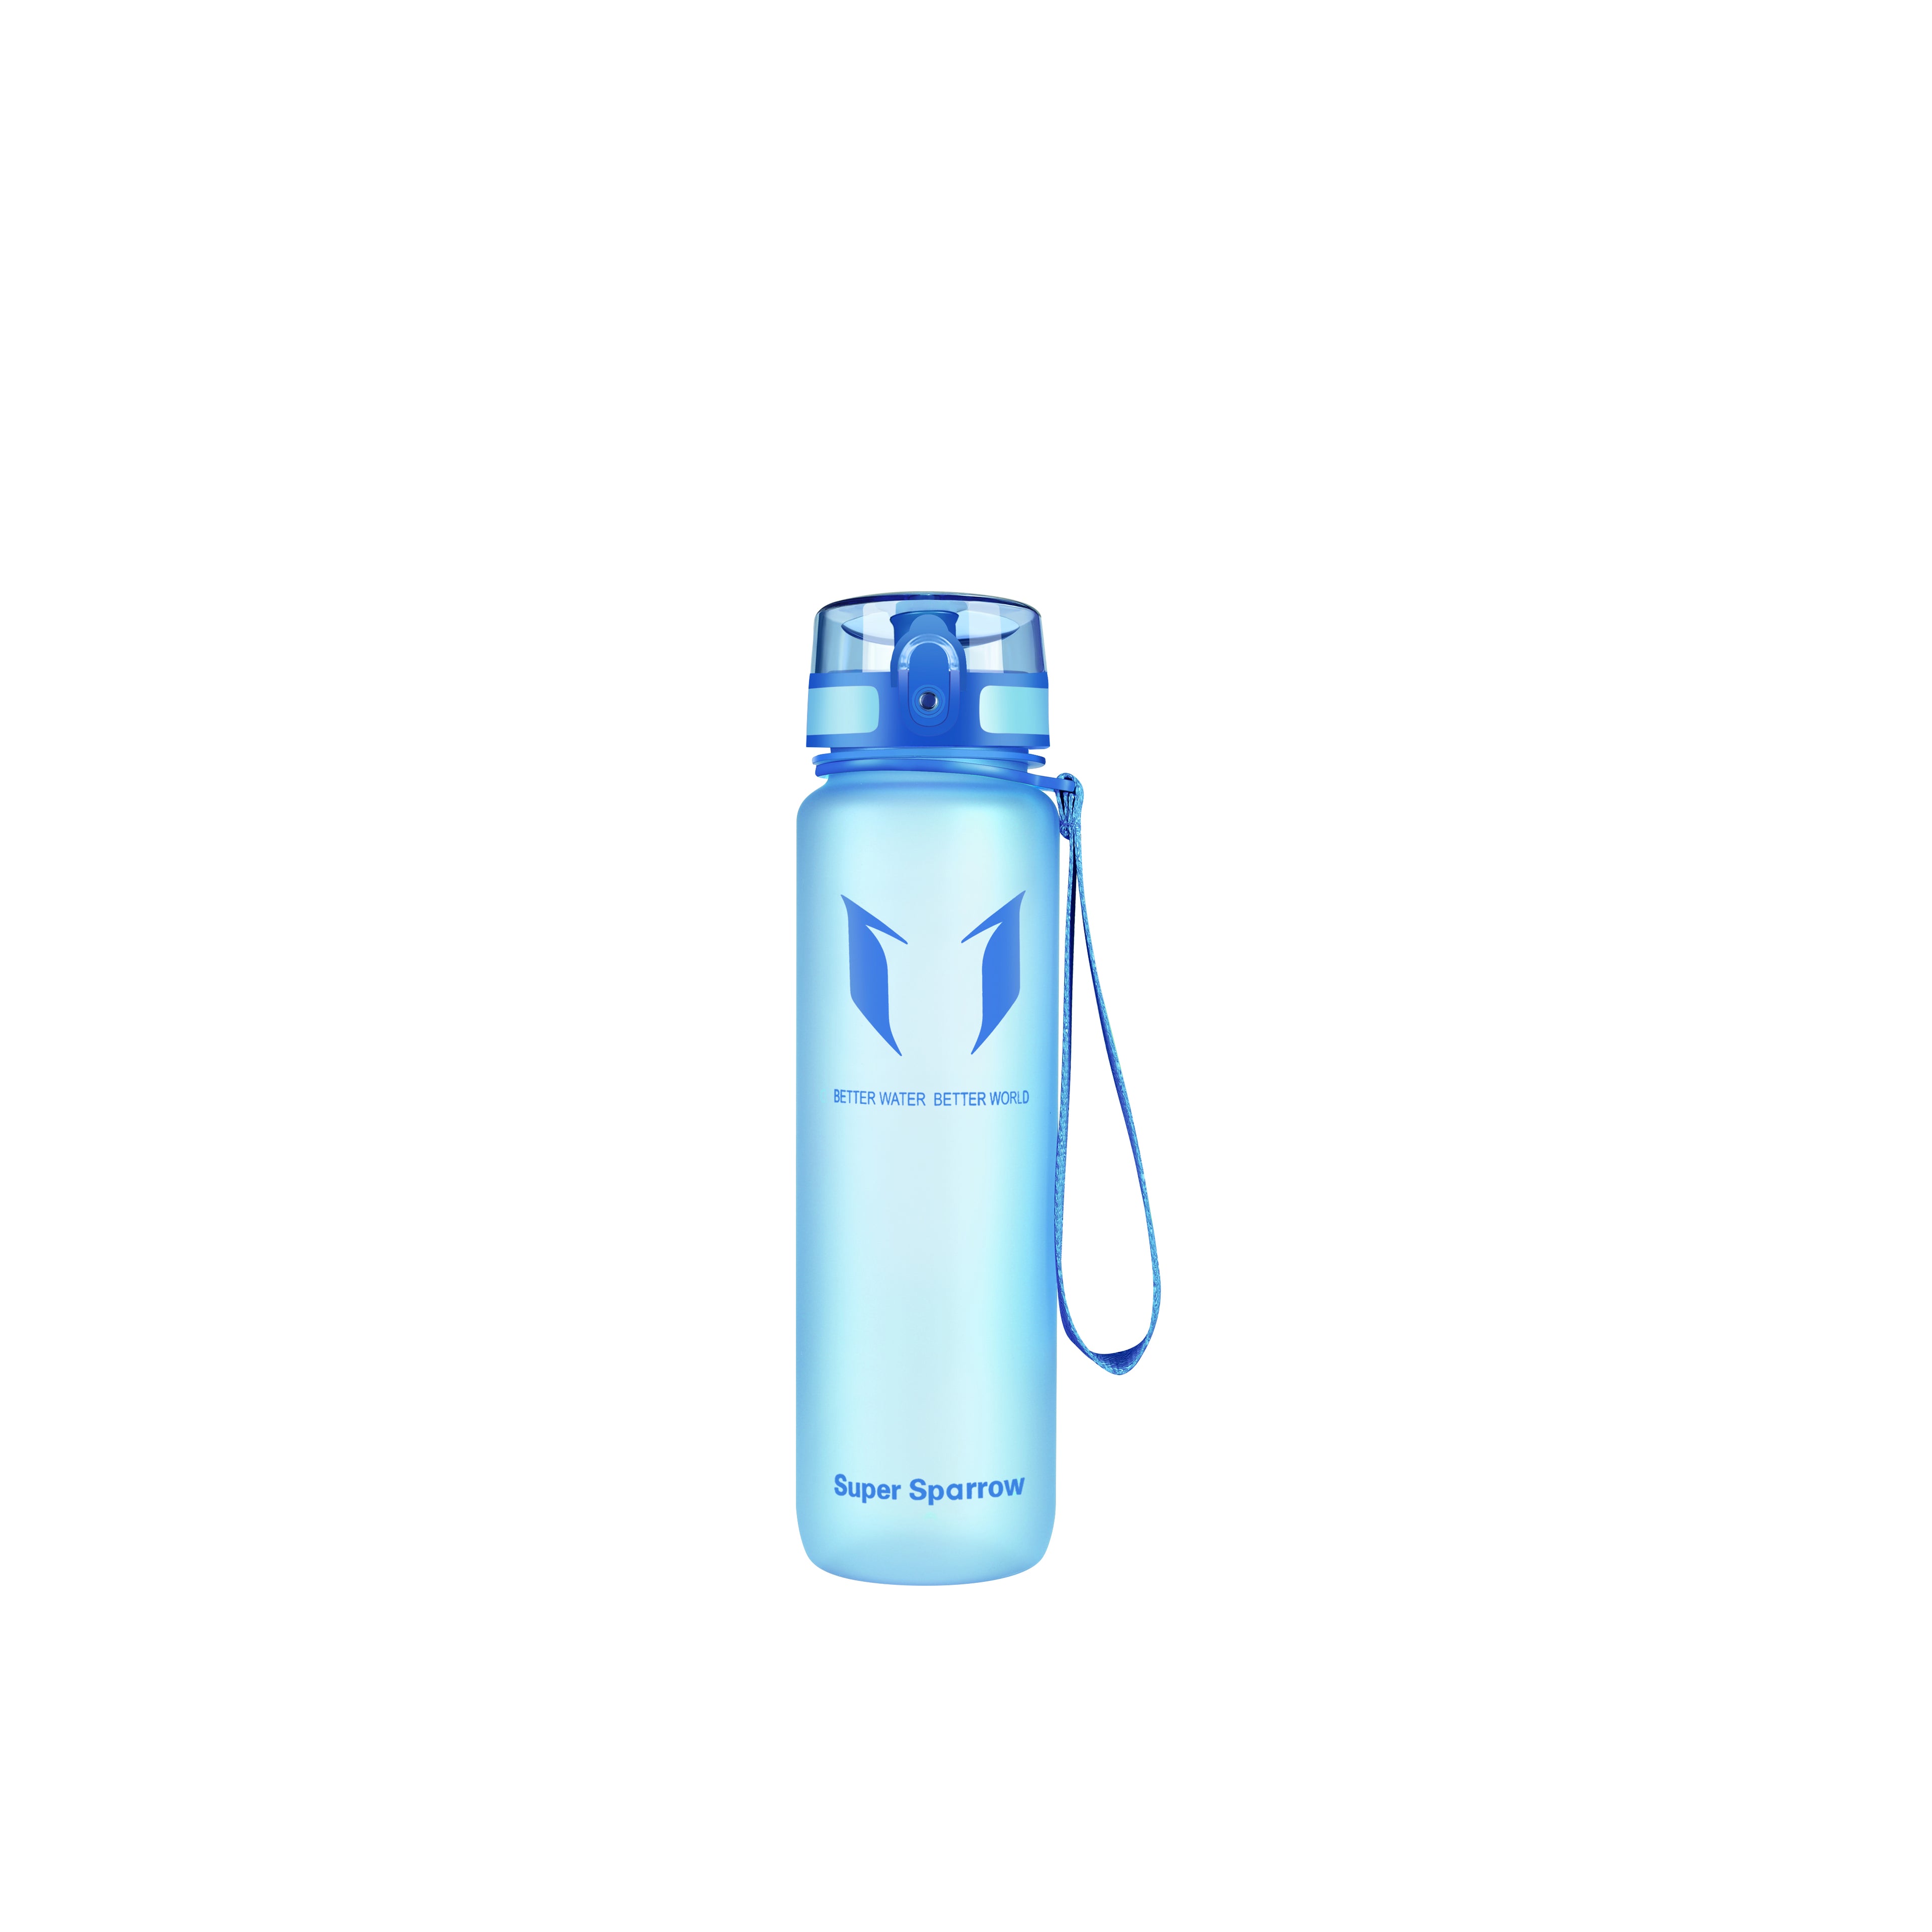  Super Sparrow Botella de agua deportiva – 11.8 fl oz – No  tóxico sin BPA y plástico de copoliéster Tritan ecológico – Para correr,  gimnasio, yoga, aire libre y camping 